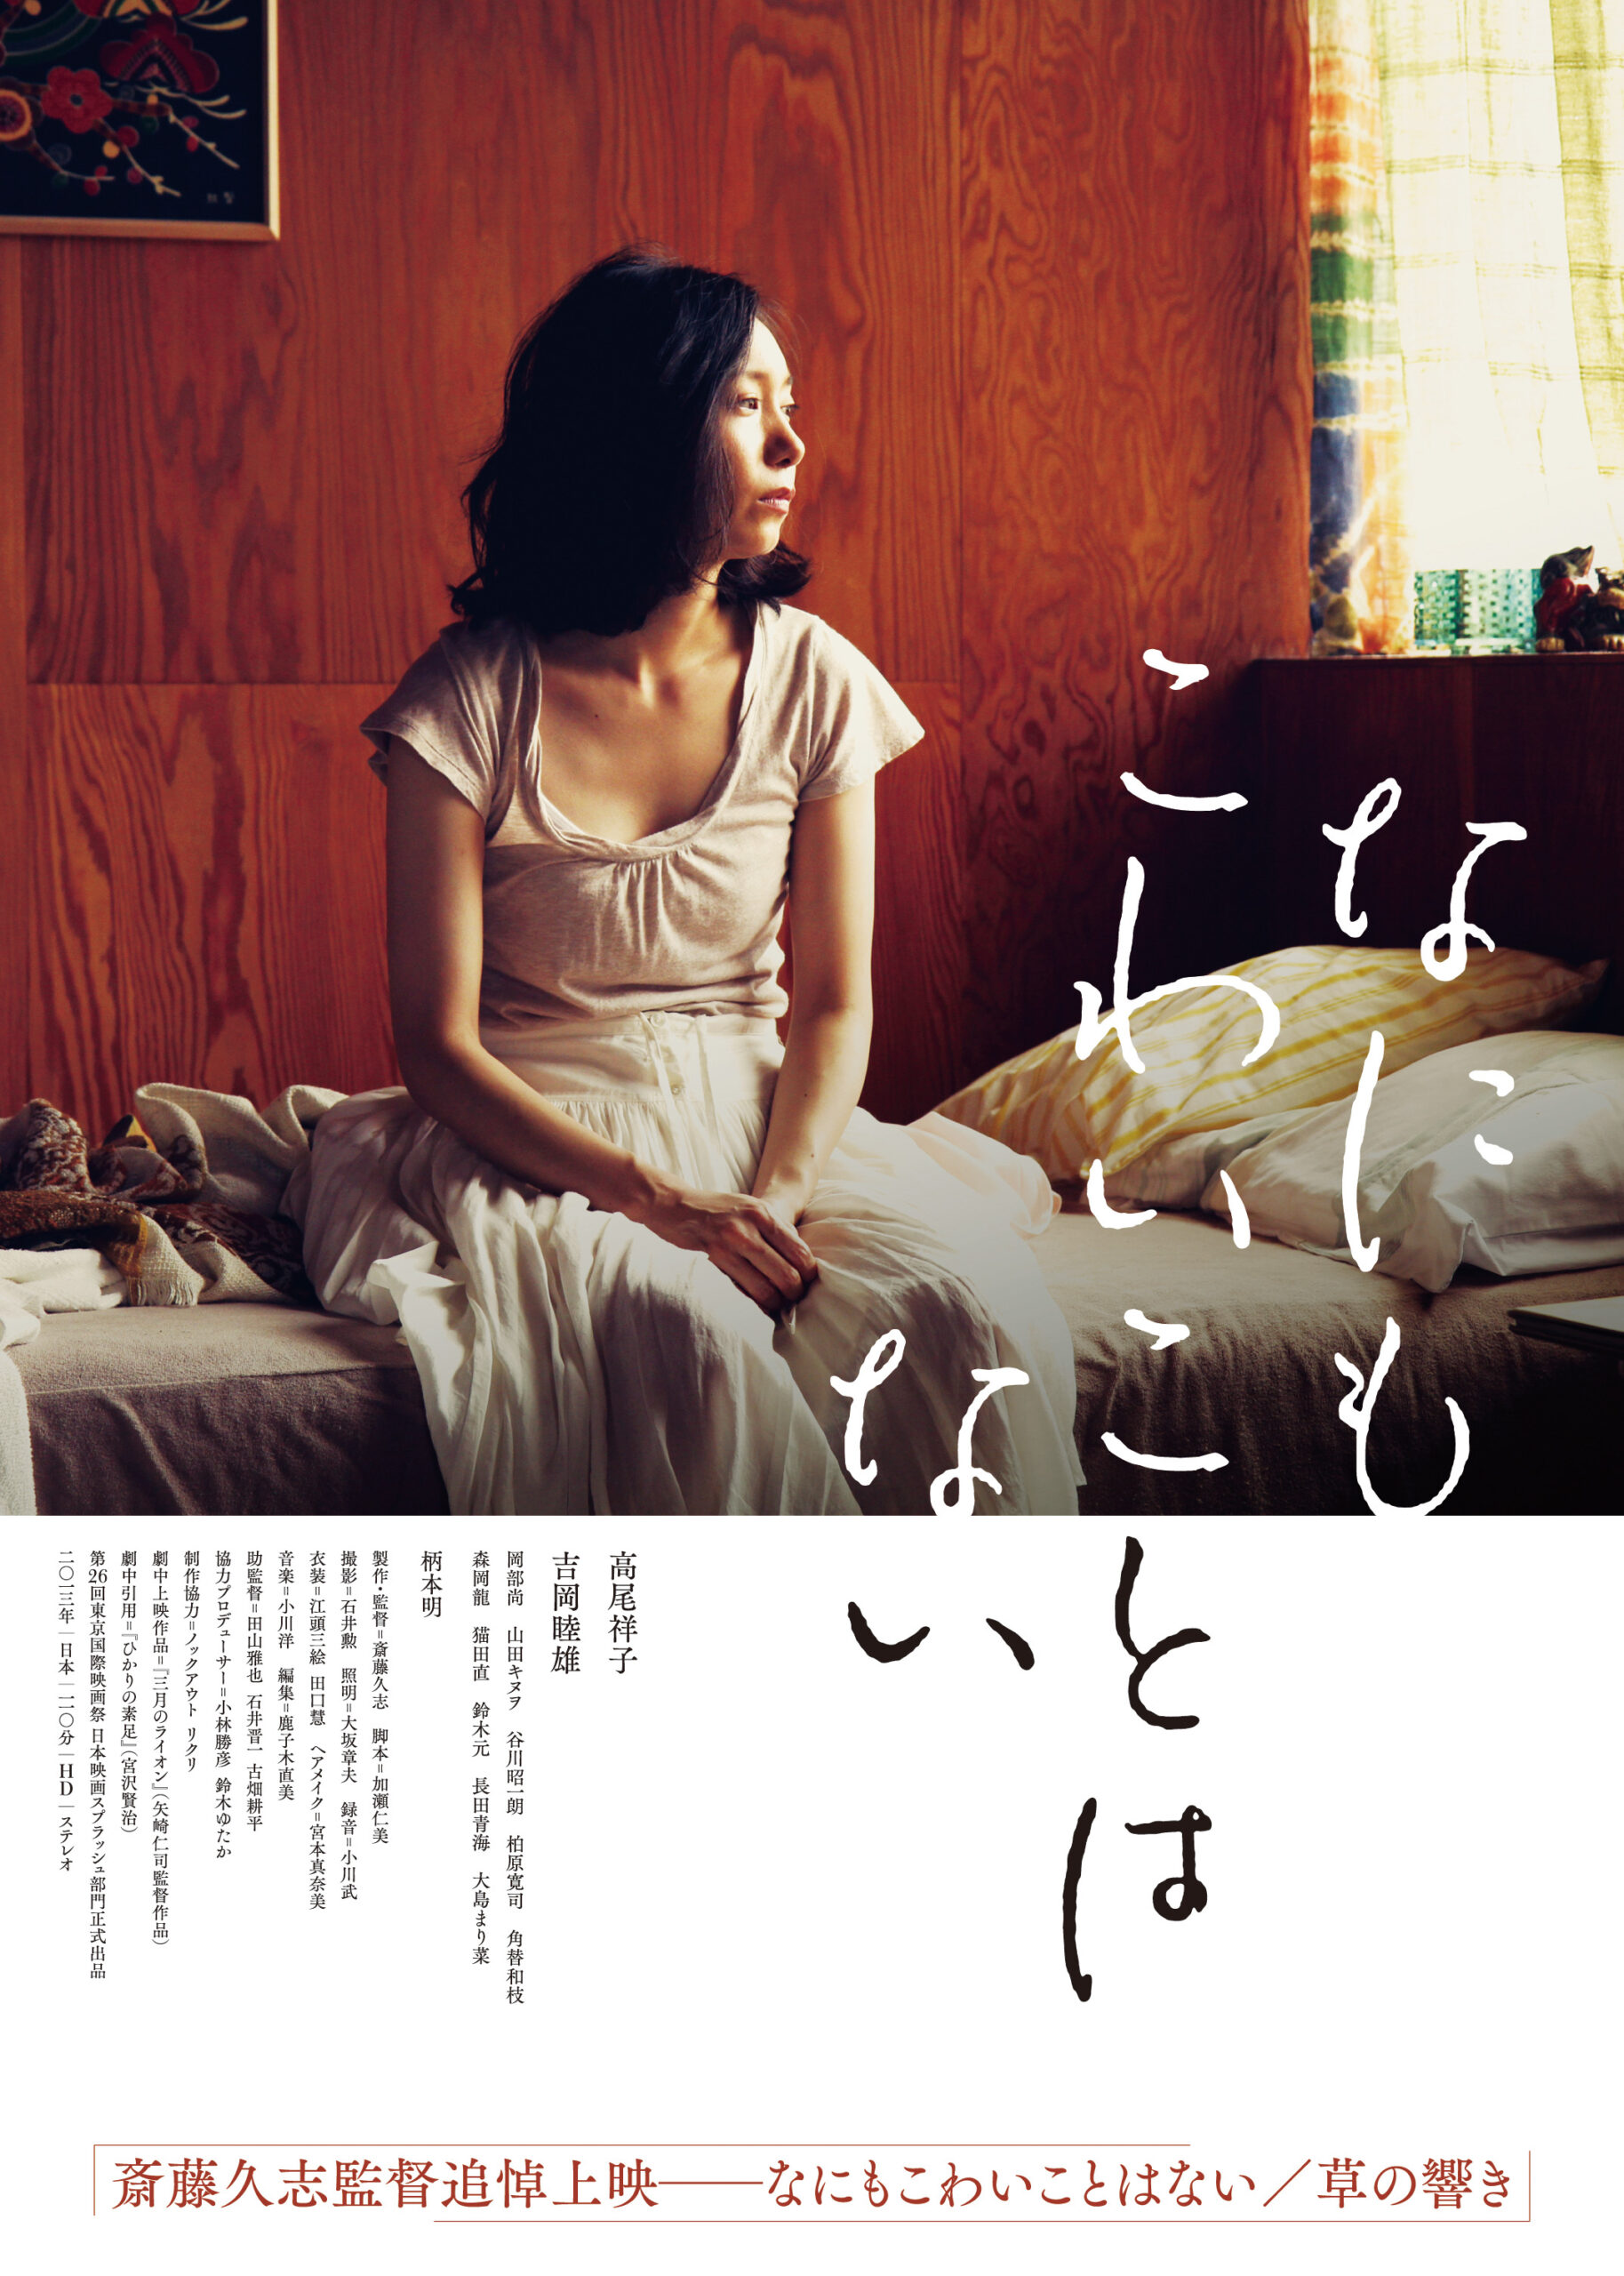 斎藤久志監督追悼上映 『なにもこわいことはない』『草の響き』